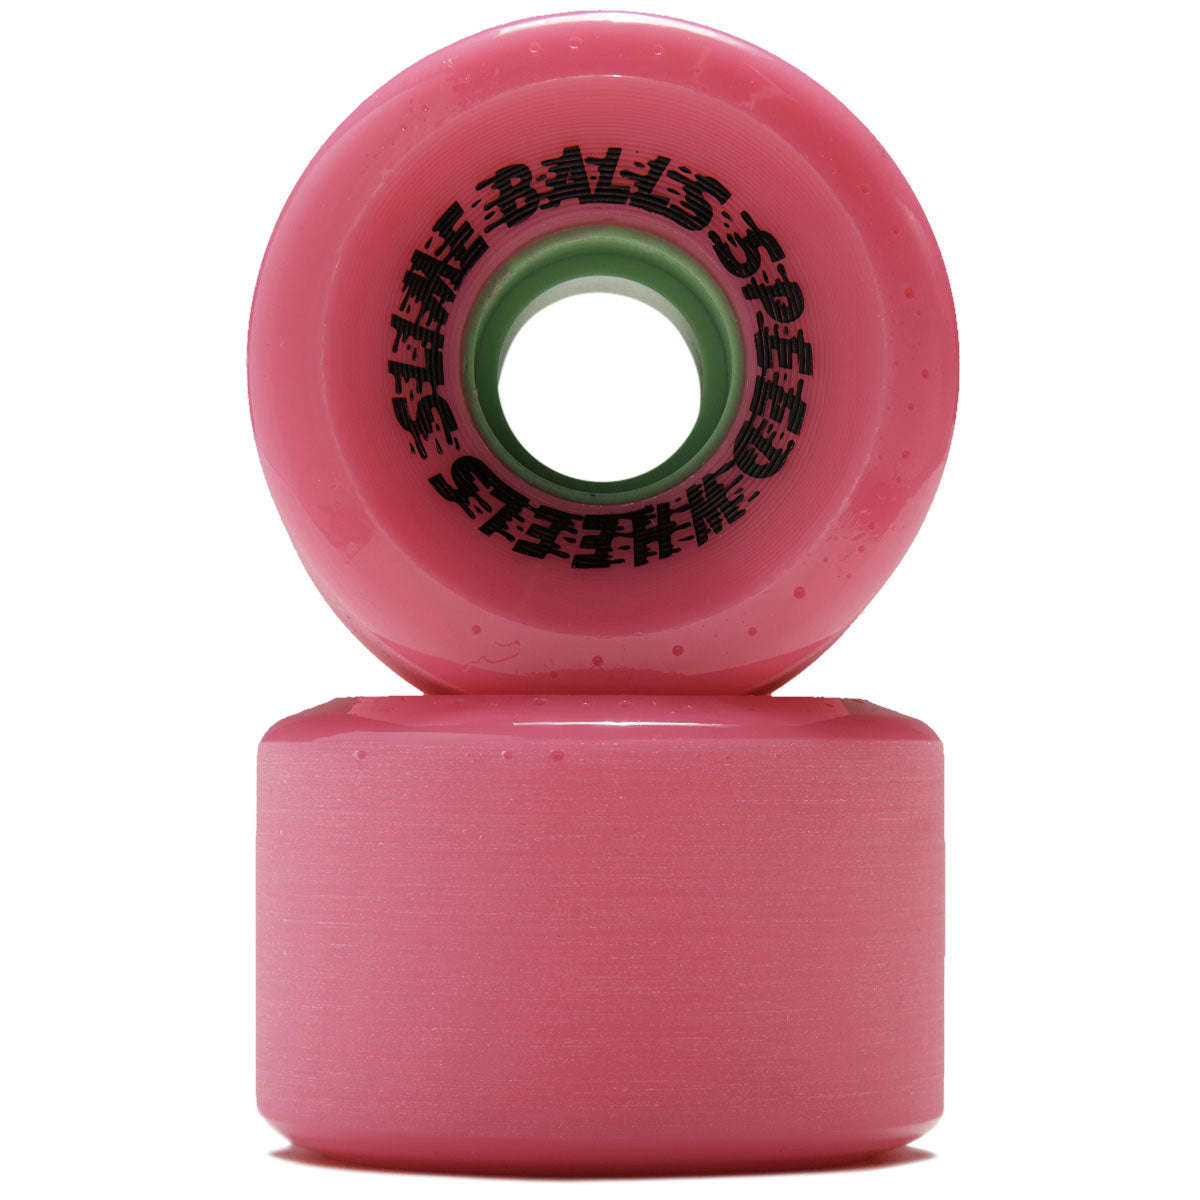 Slime Balls OG Slime 78a Skateboard Wheels - Cafe Pink - 60mm image 2